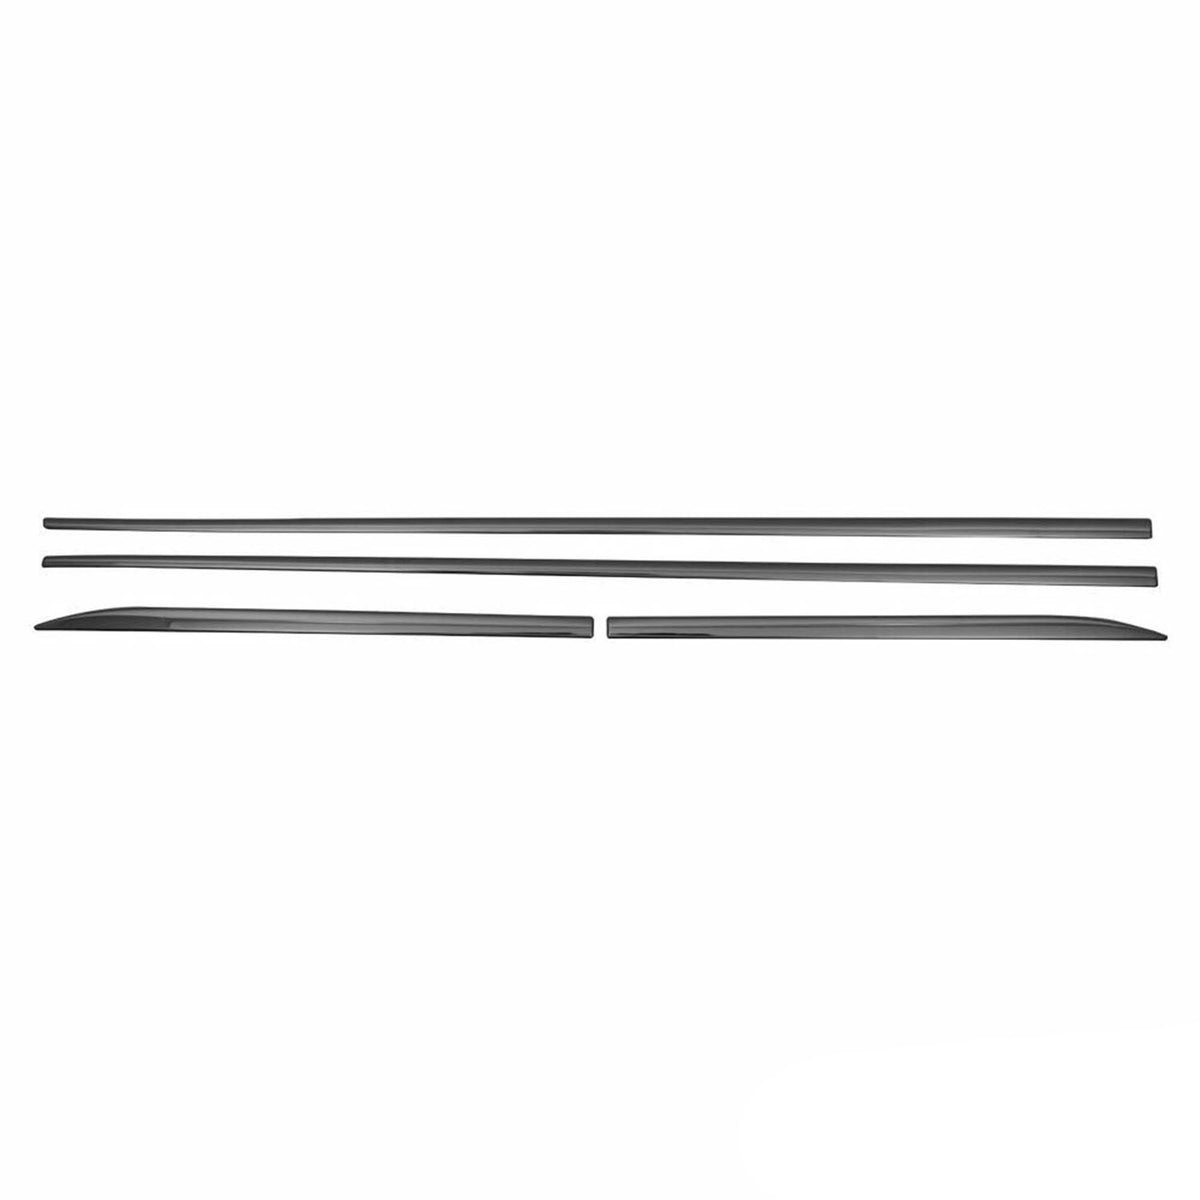 Seitentürleiste Türschutzleiste für Ford Focus 2011-2018 Chrom Stahl Dunkel 4x